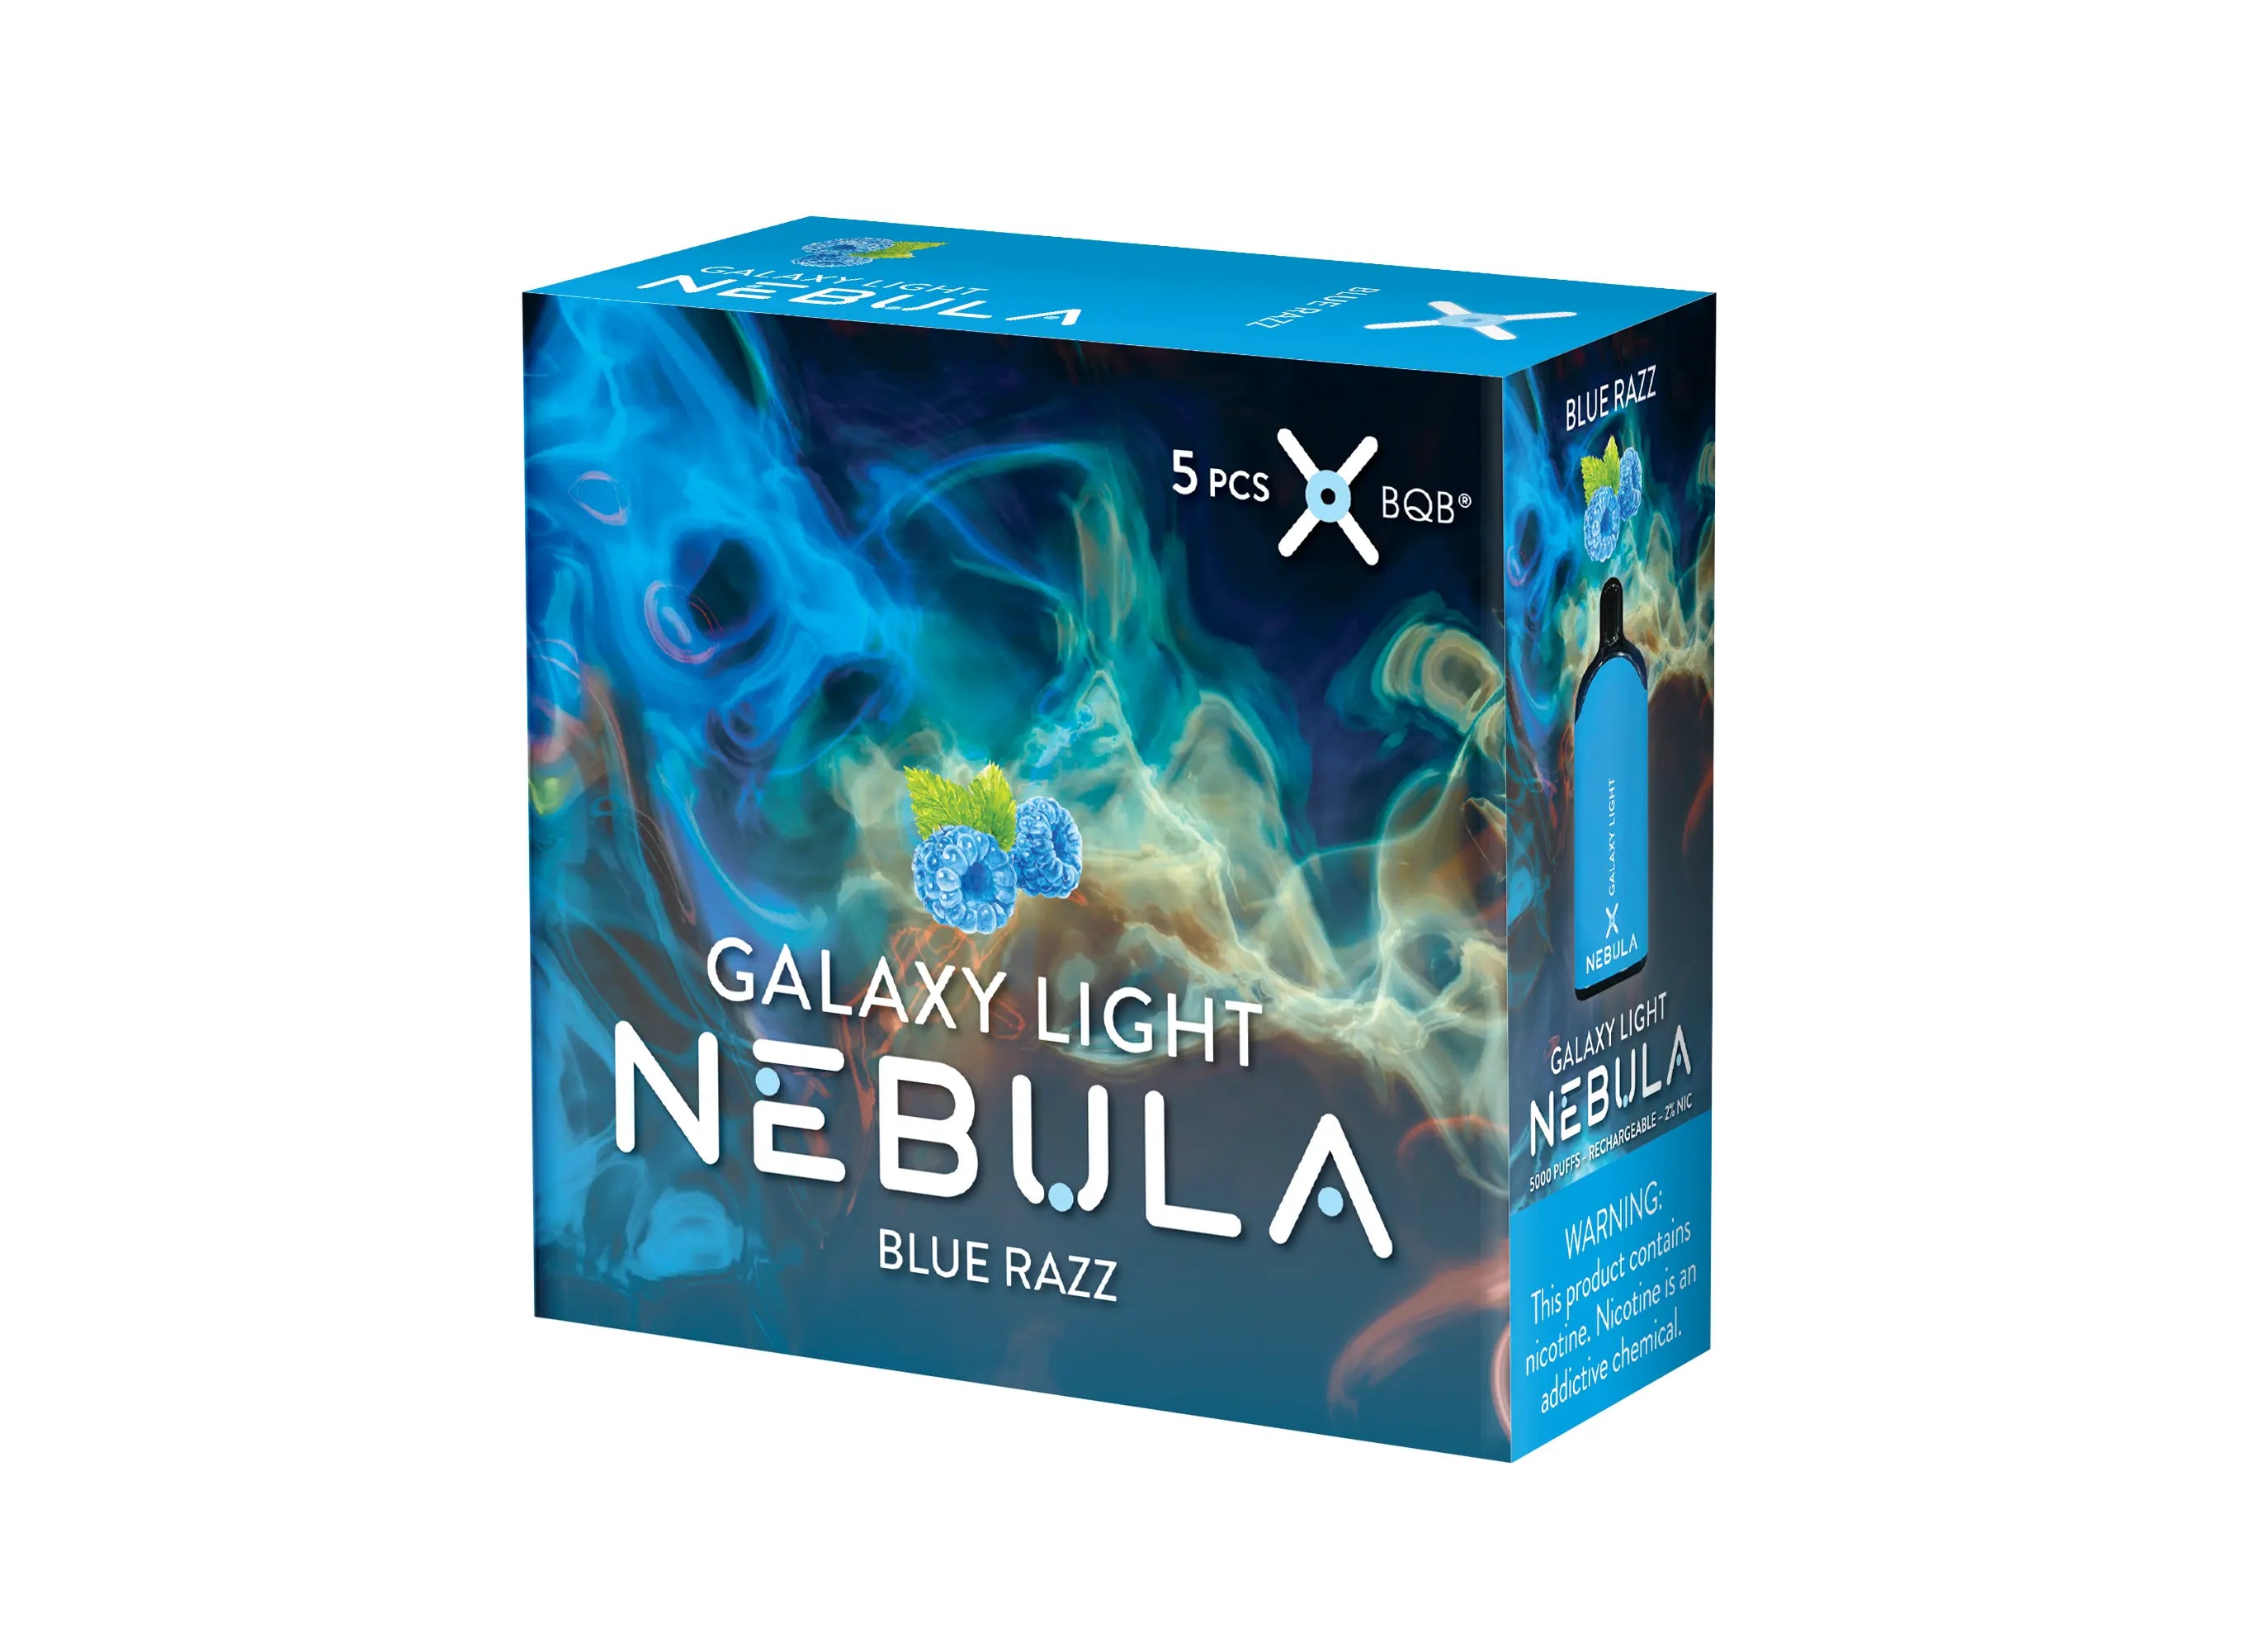 Nebula Galaxy Light 2% 5000 Puffs Vape - Blue Razz - B2B Nebula